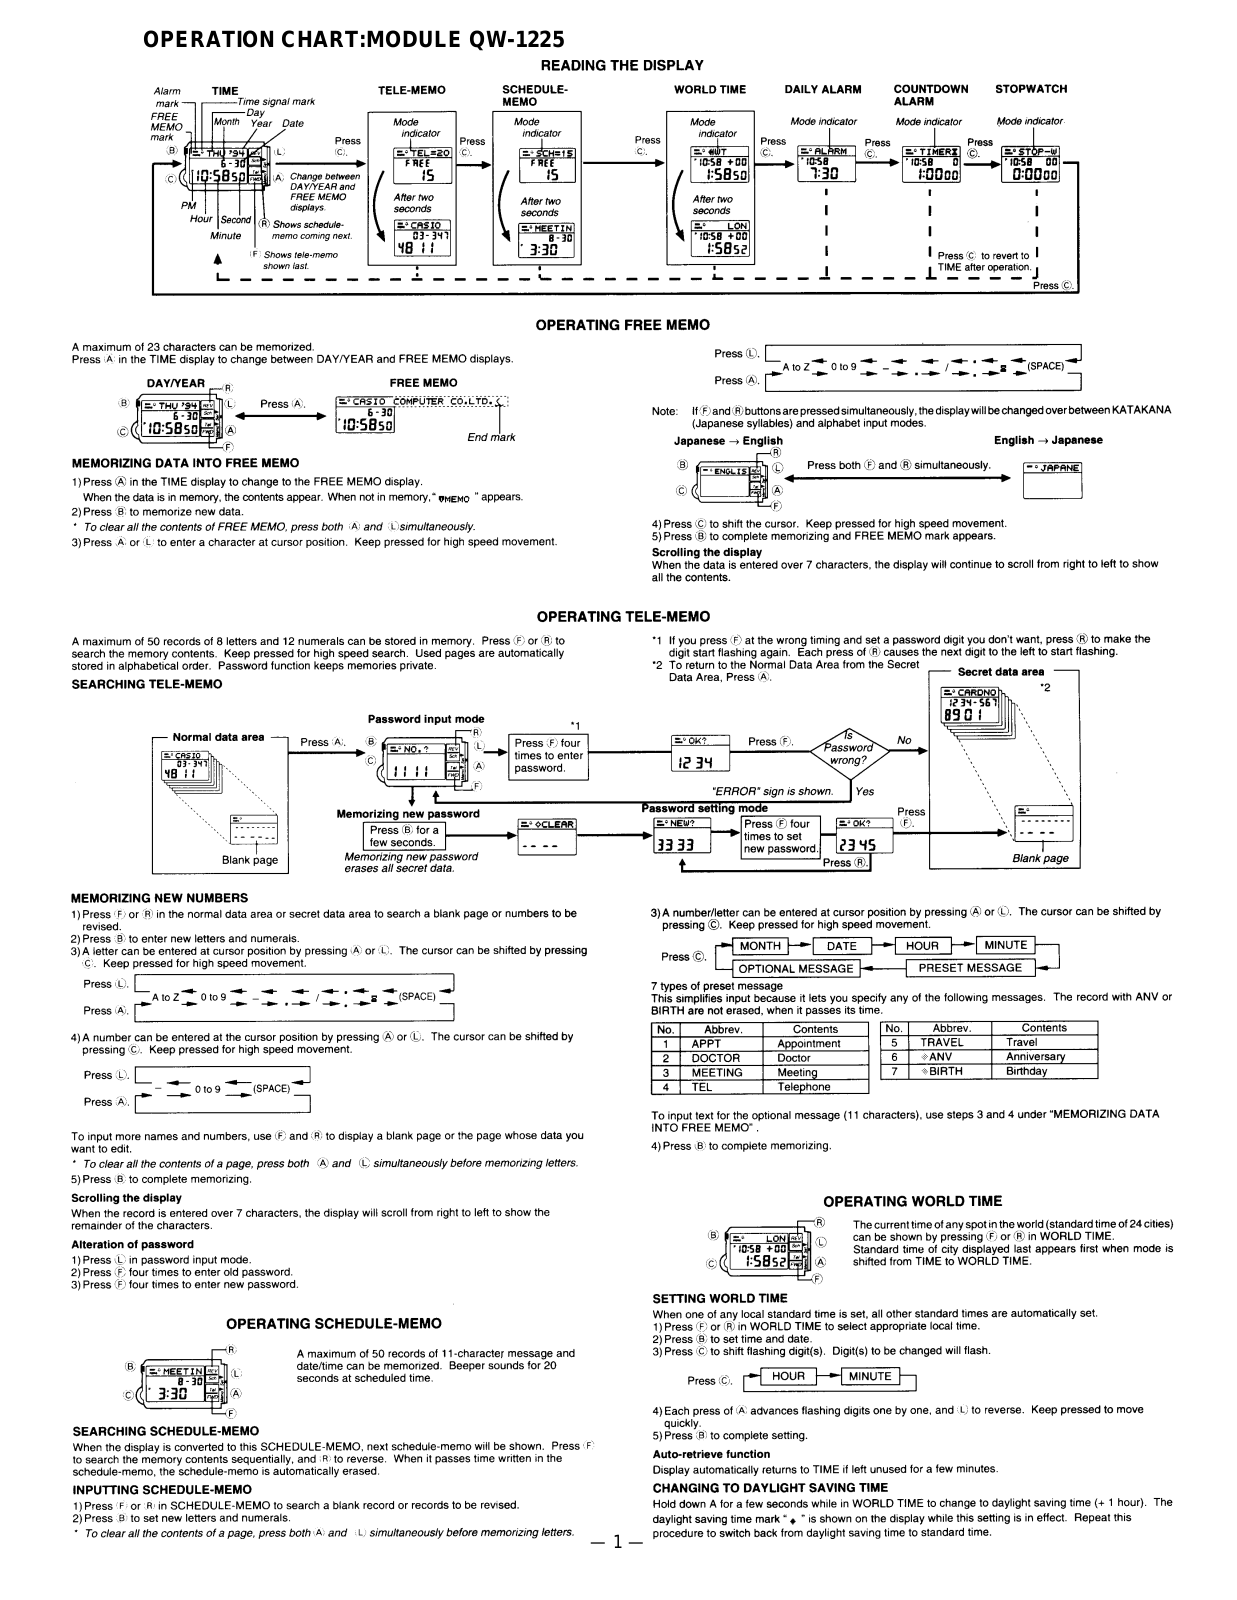 Casio 1225 Owner's Manual